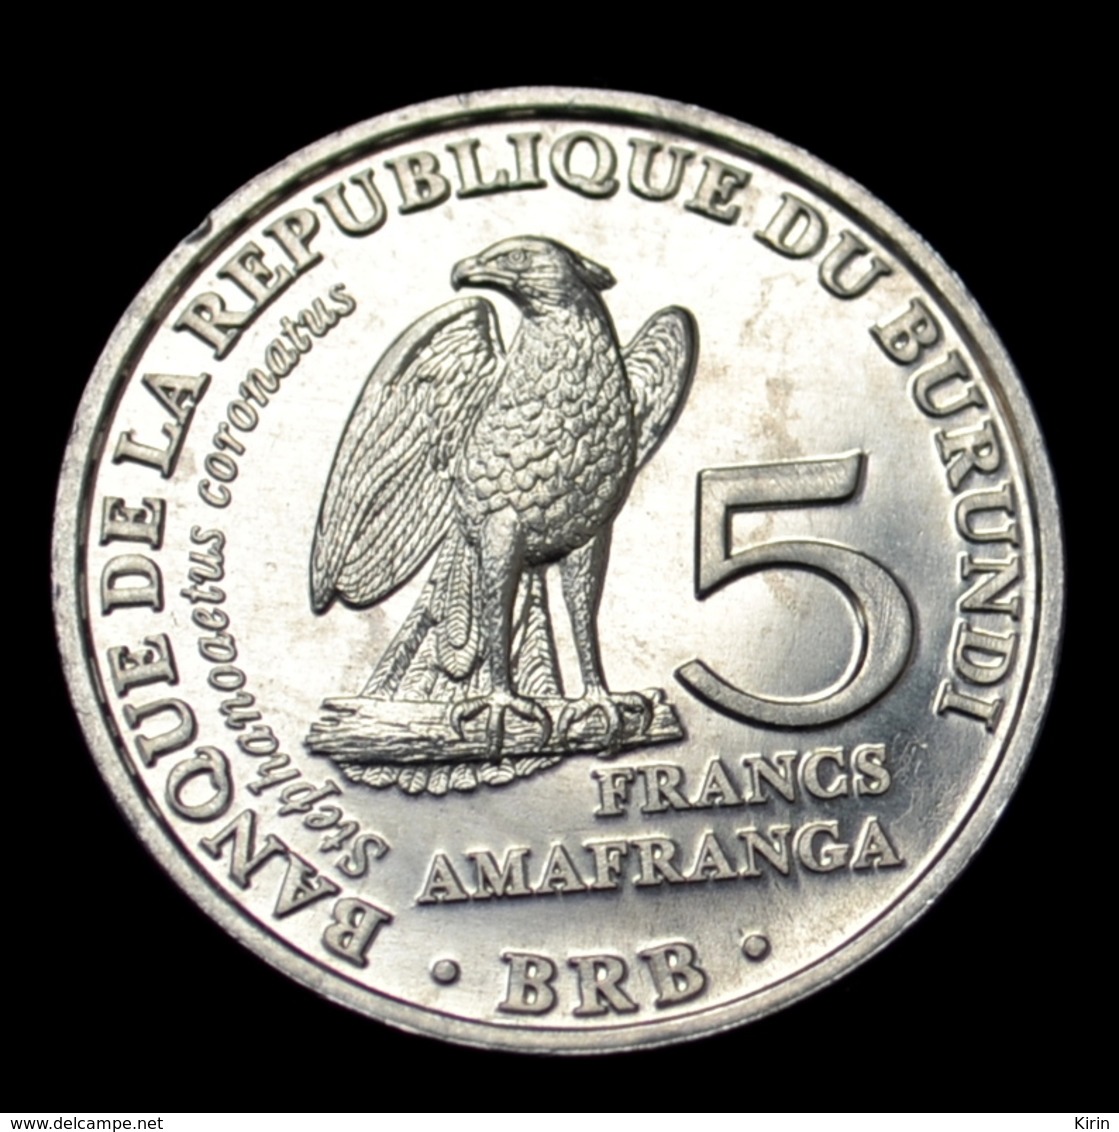 Burundi 5 Francs 2014. Stephanoaetus Coronatus, Km25 UNC Animal-eagle Coin. - Burundi